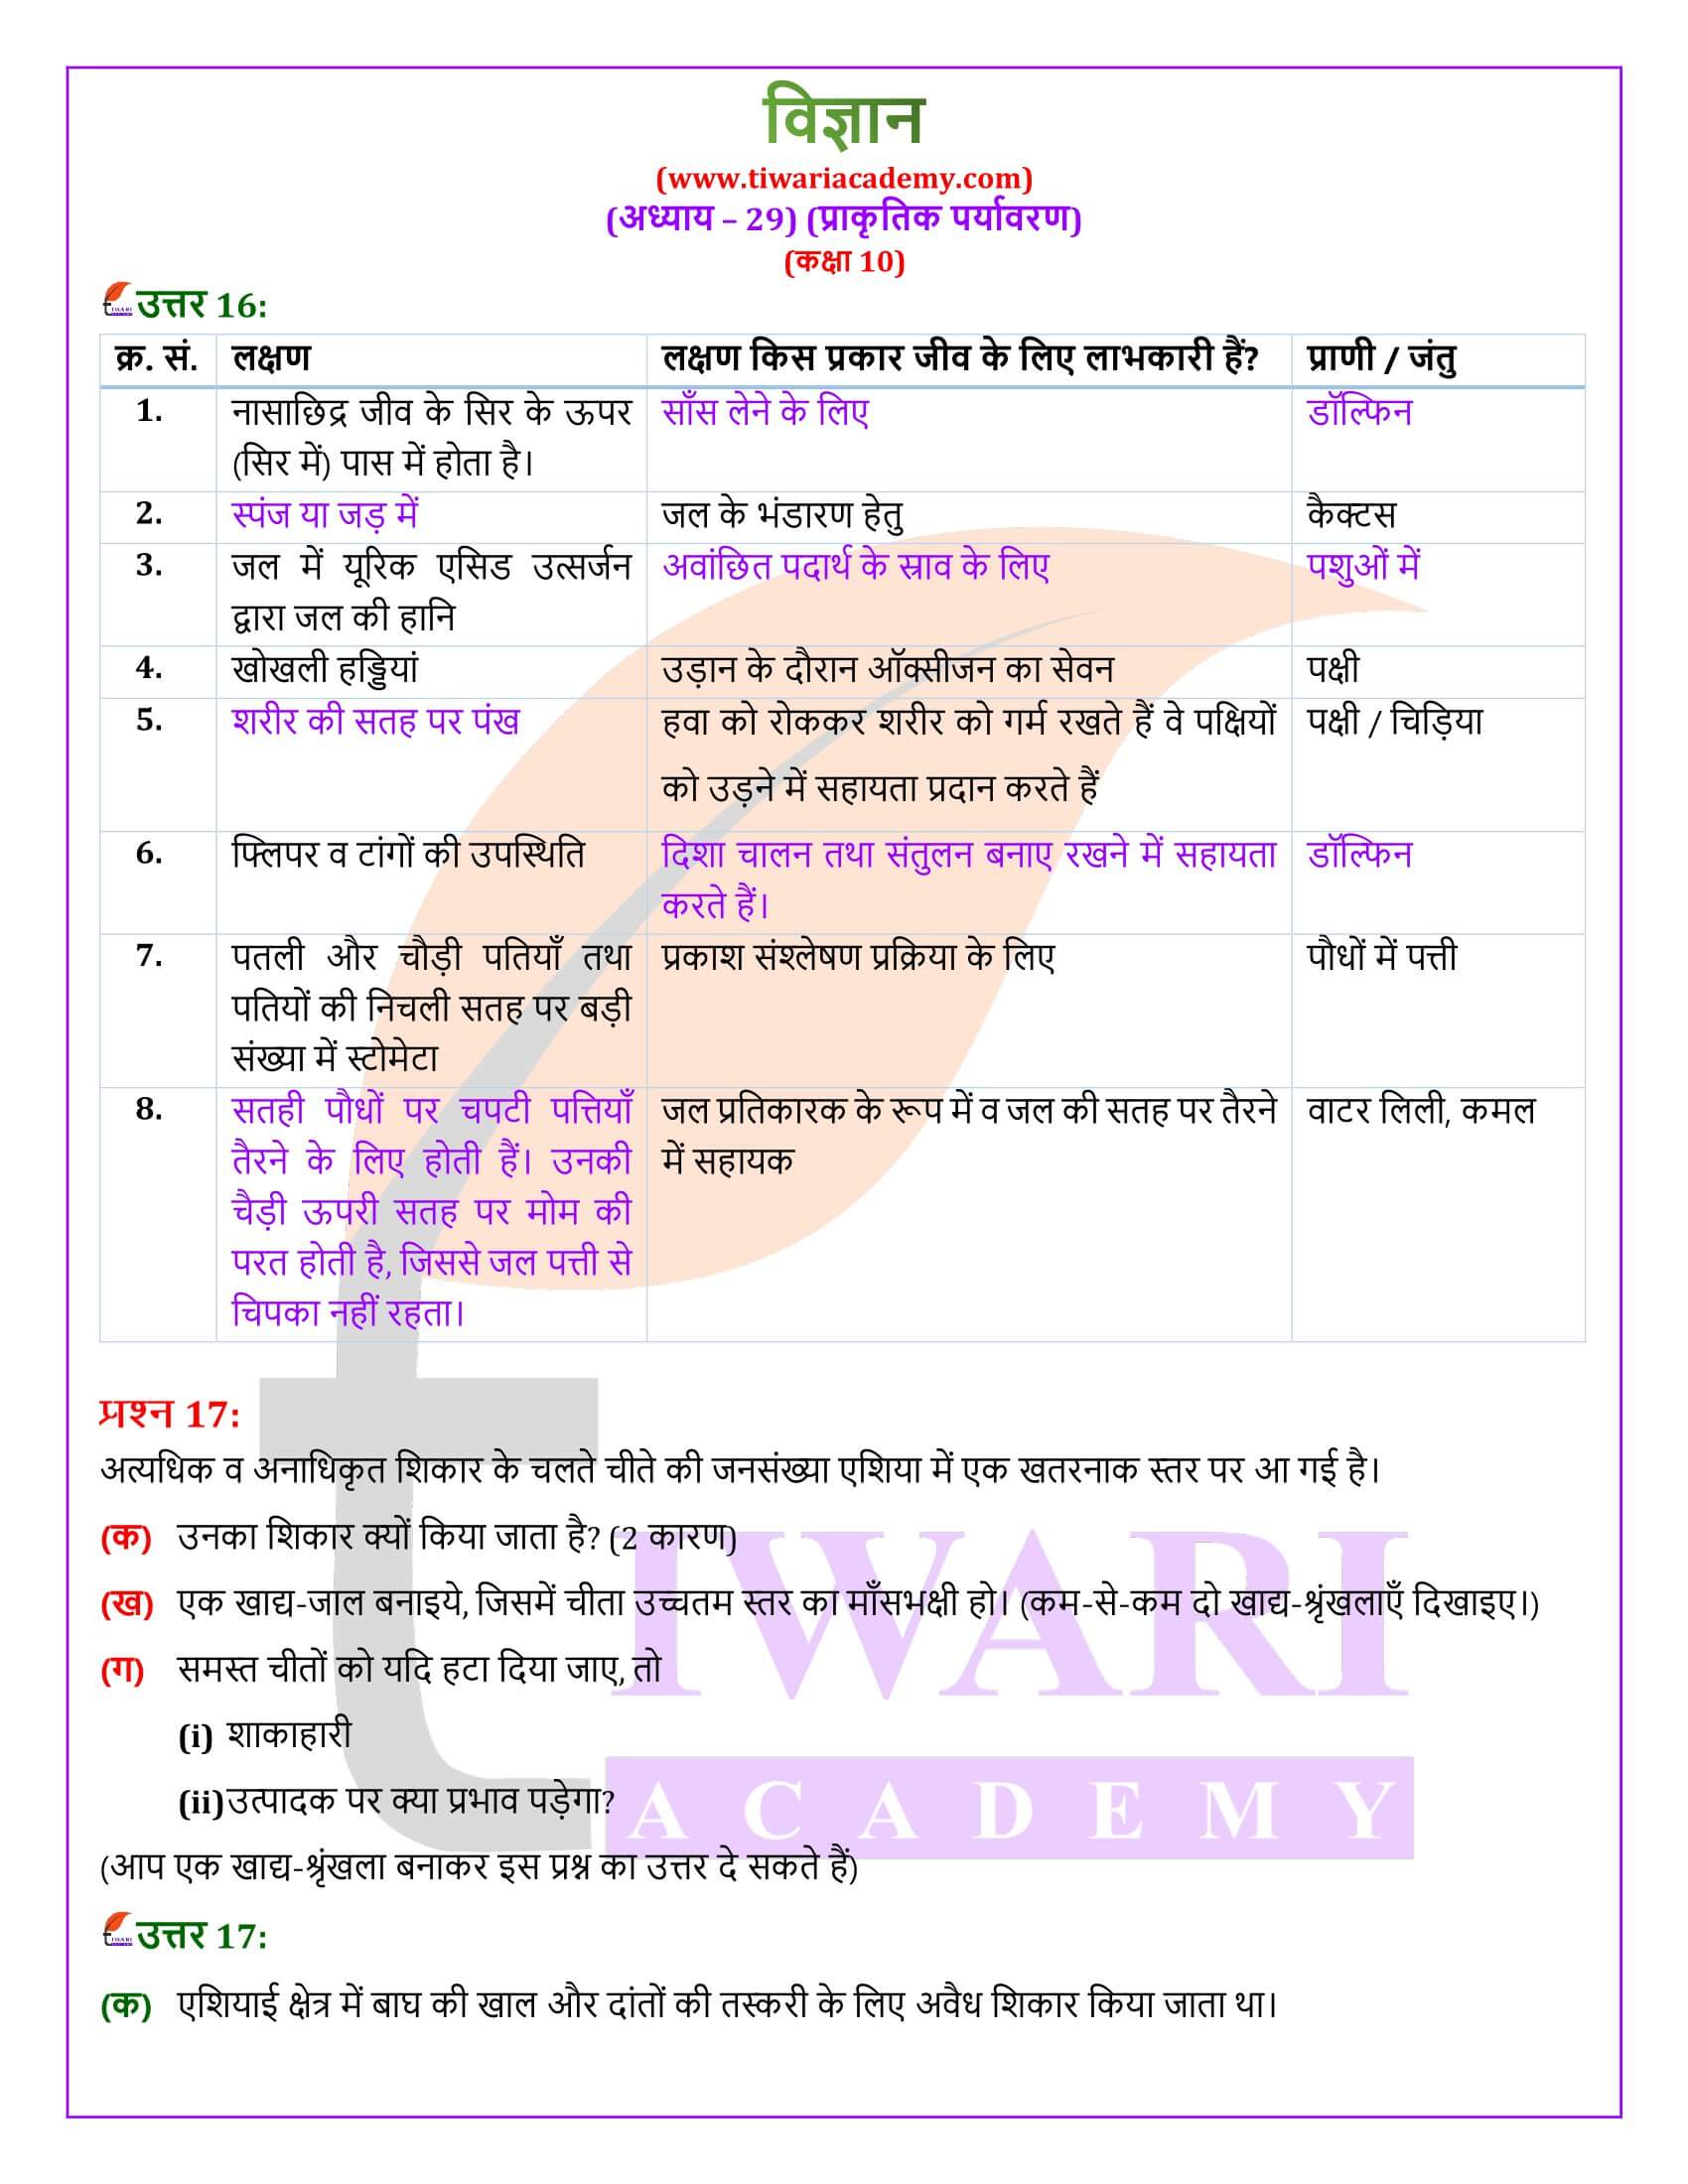 NIOS कक्षा 10 विज्ञान अध्याय 29 हिंदी में हल